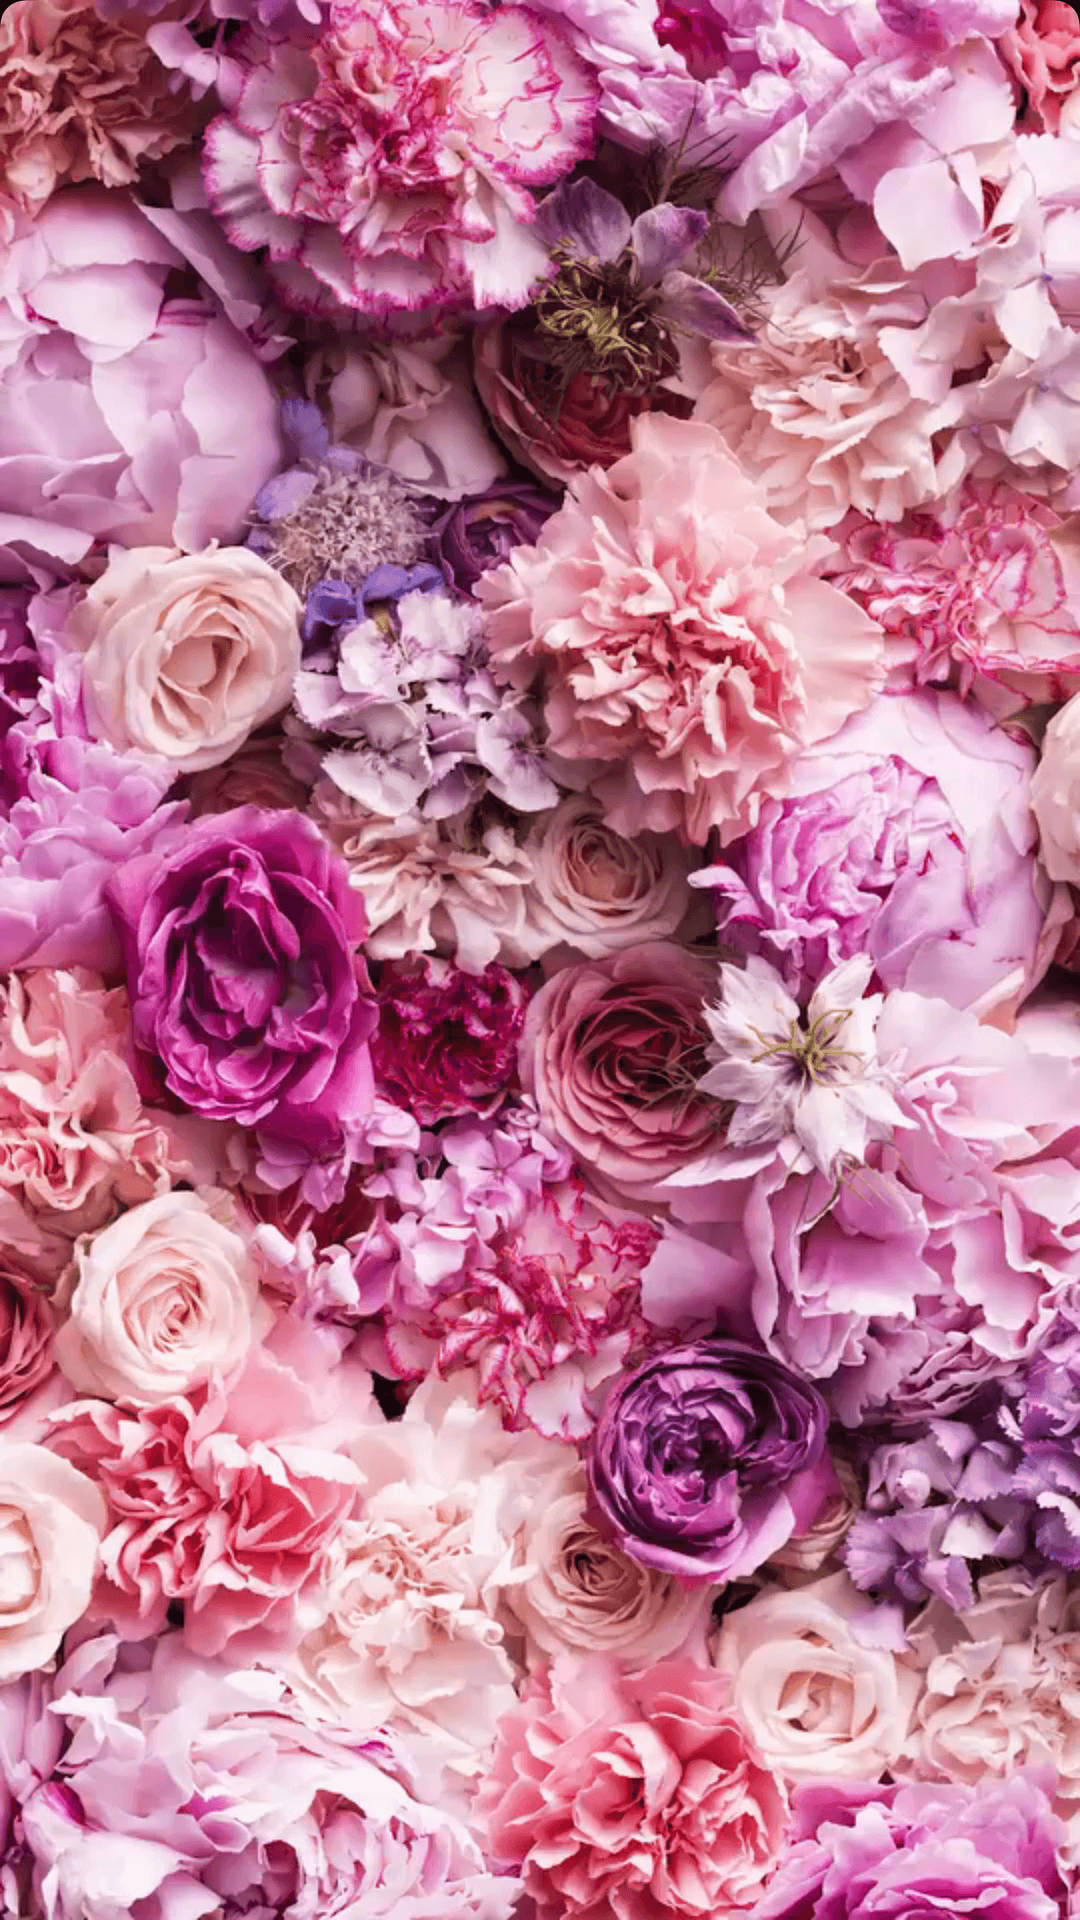 Với vải hình nền hoa hồng cho iPhone, bạn sẽ cảm thấy như mình đang ngắm nhìn những bông hoa hồng thật sự đẹp tuyệt vời. Chất lượng hình ảnh rõ nét và sắc nét, bạn sẽ không thể rời mắt khi nhìn vào điện thoại của mình. Hãy tải hình ảnh này ngay bây giờ để có một trải nghiệm thú vị trên điện thoại của bạn!